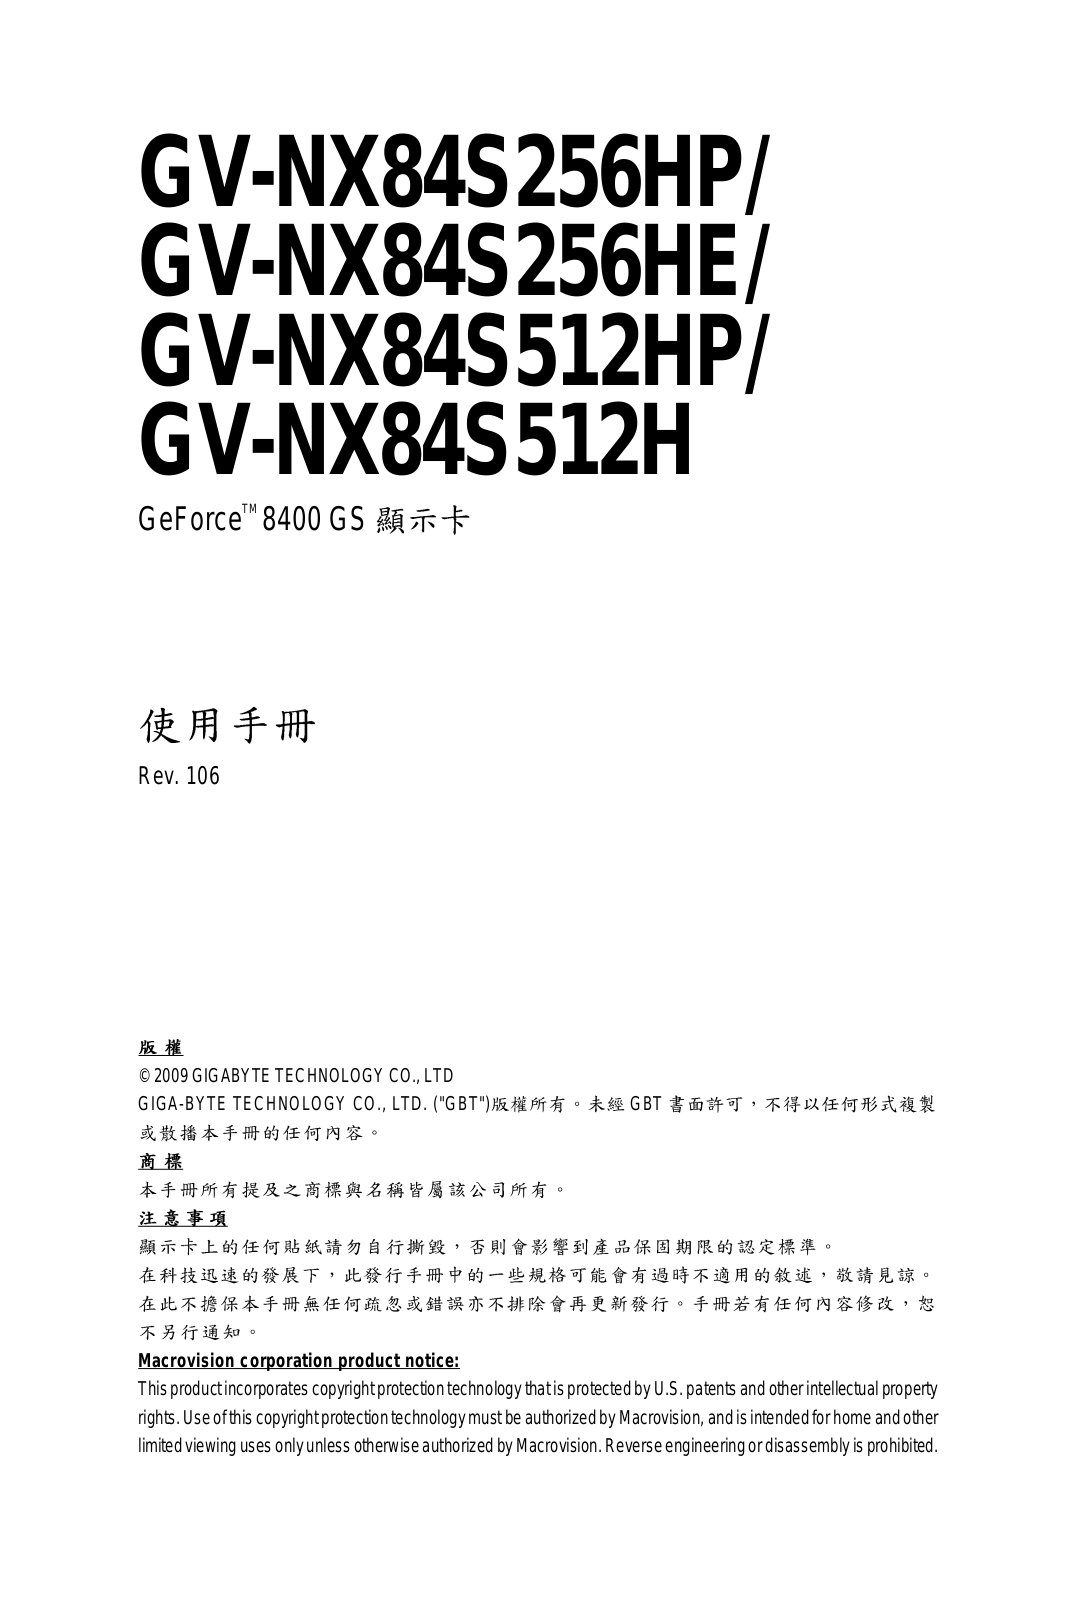 Gigabyte GV-NX84S256HE, GV-NX84S512H, GV-NX84S512HP, GV-NX84S256HP Manual